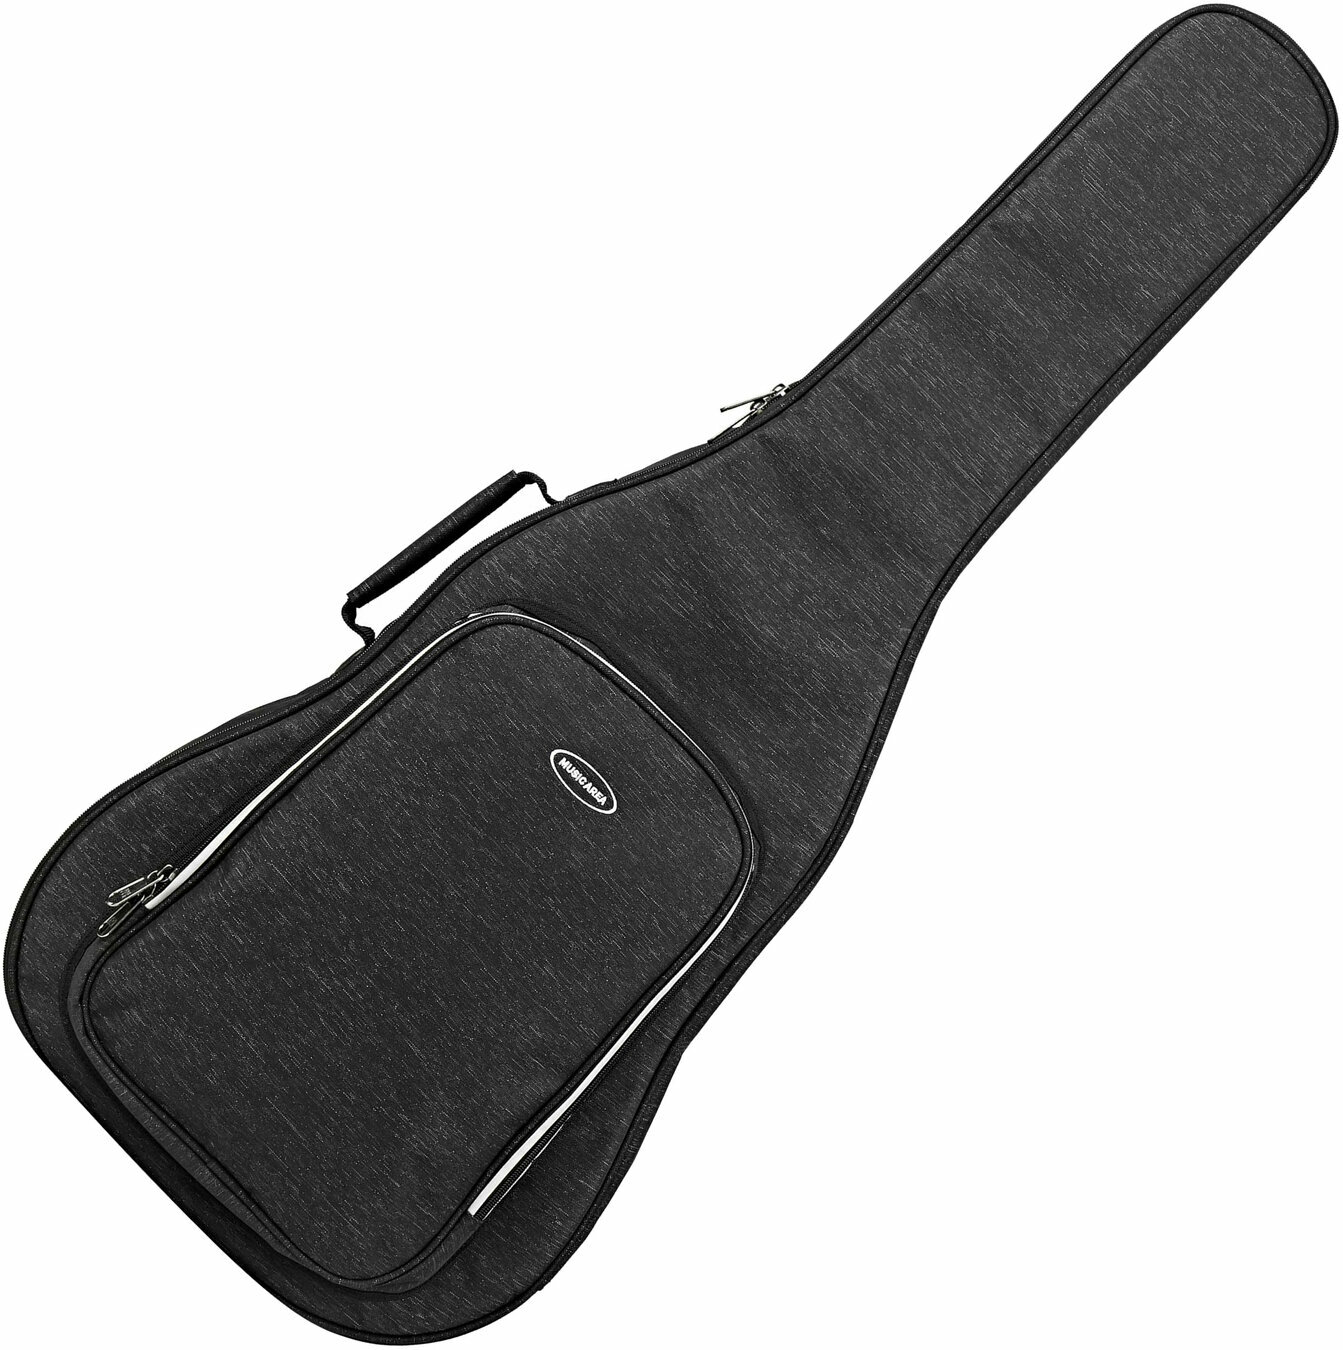 Tasche für akustische Gitarre, Gigbag für akustische Gitarre MUSIC AREA RB10 Acoustic Guitar Tasche für akustische Gitarre, Gigbag für akustische Gitarre Black